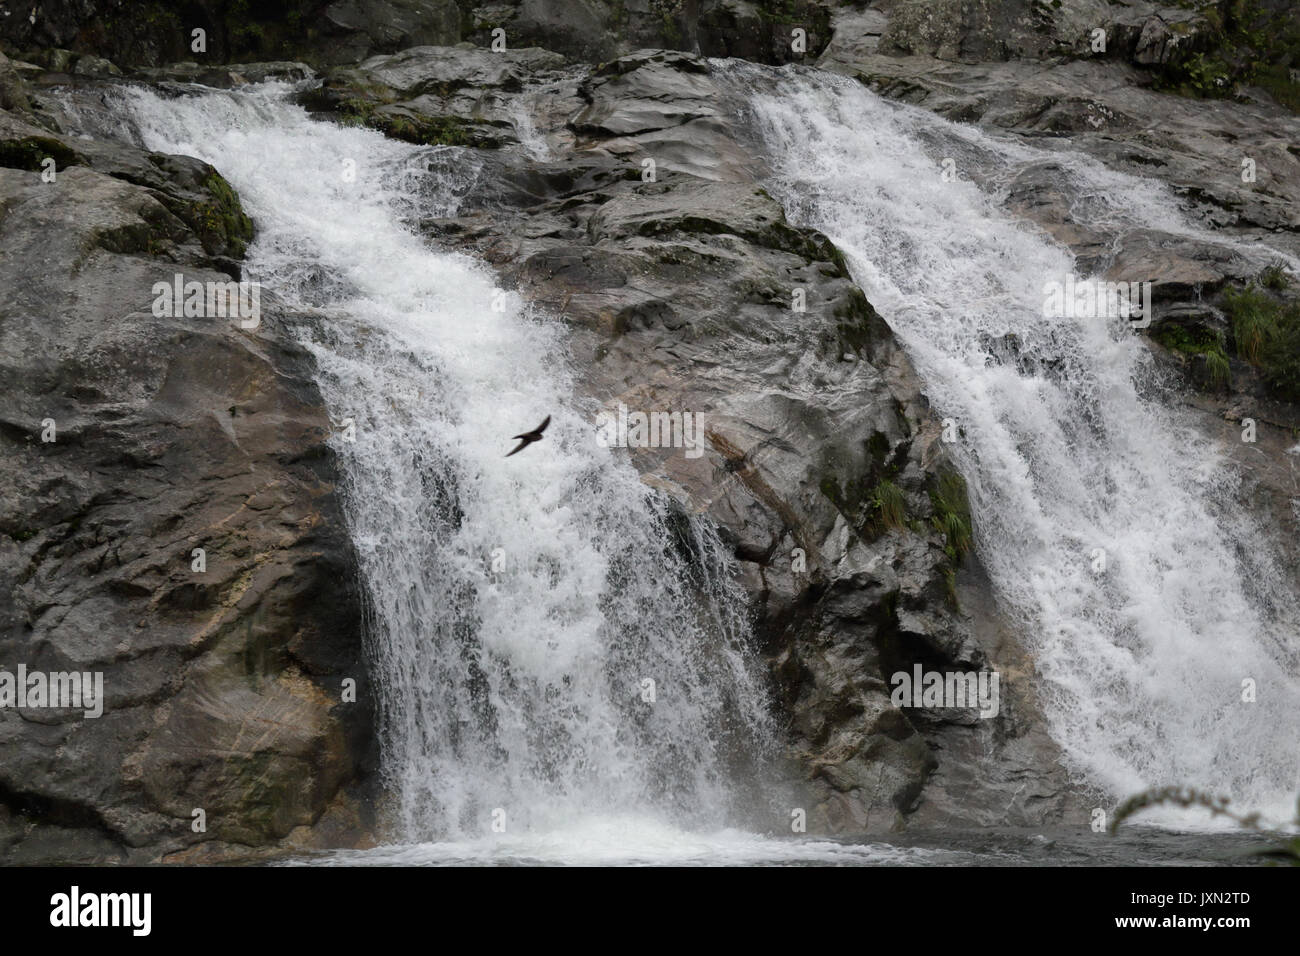 Die loana torrent Wasserfall auf Felsen von Kiefern, Tannen und andere grüne Bäume in Malesco, Vigezzotal, Italien umgeben Stockfoto